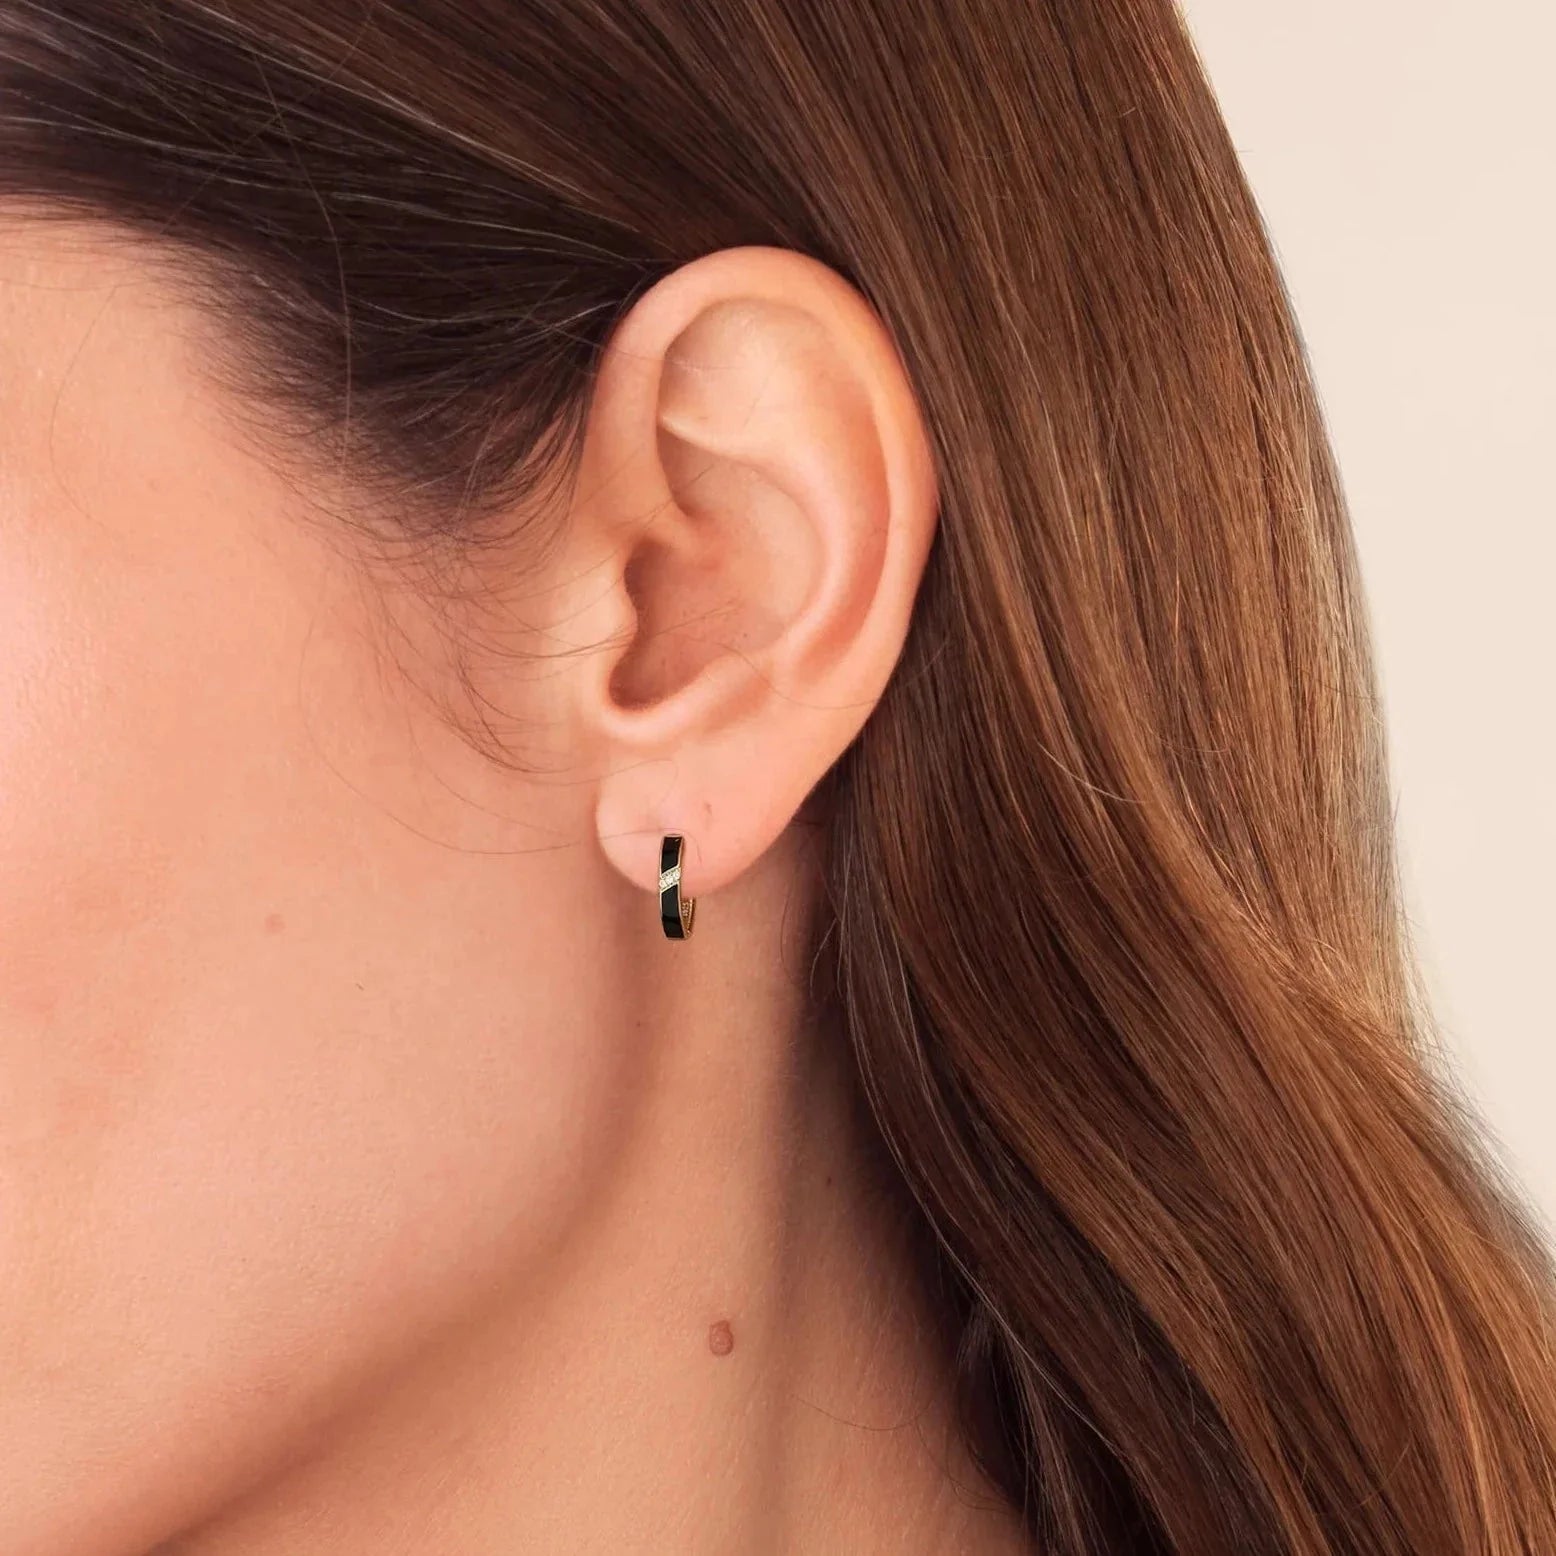 Women's S925 Diamond Black Hoop Earrings in 14K Gold - 15mm Earrings 